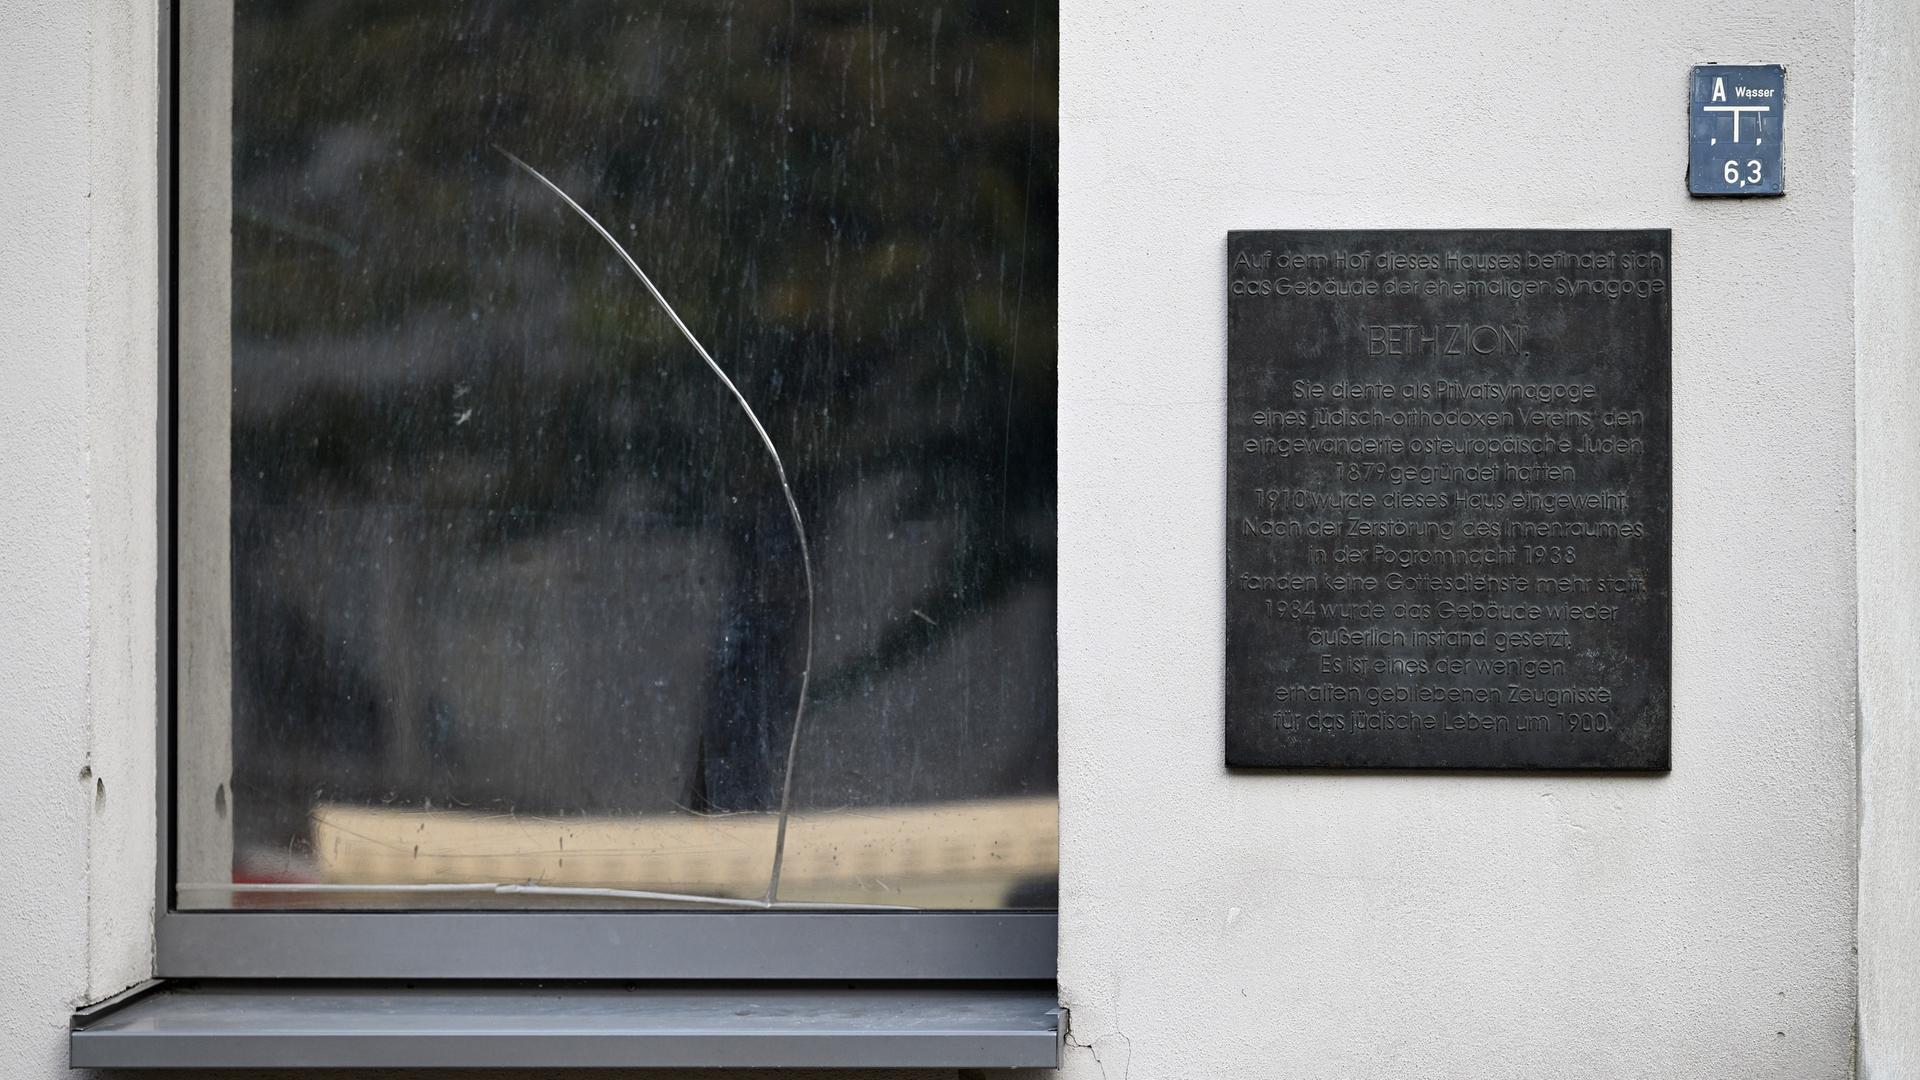 Ein Schild hängt neben dem Eingang zur Synagoge in der BrunnenstraÃe 33 neben einem Fenster mit kaputter Scheibe. Auf das Gebäude war ein Anschlag verübt worden. Das eigentliche, ehemalige Gebäude der jüdischen Synagoge Bethzion befindet sich auf dem Hof.